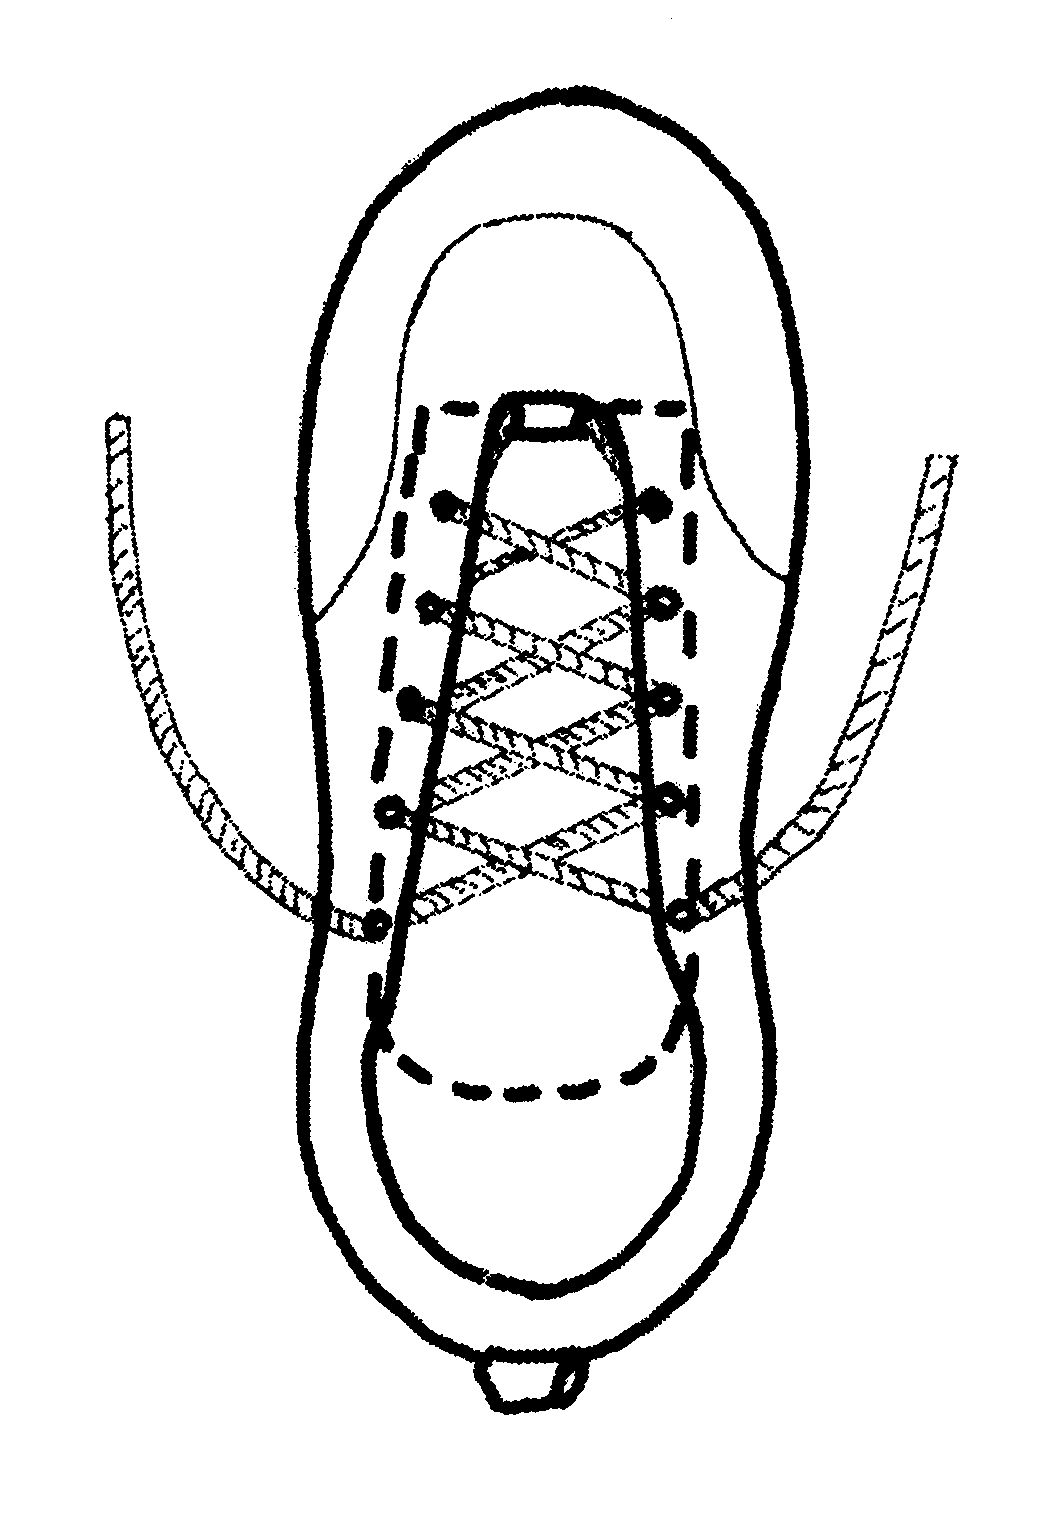 Схема шнуровки крест накрест изнутри. Шнуровка ботинок. Шнуровка кроссовок для детей. Туфли на шнуровке. Схема шнуровки кроссовок для детей.